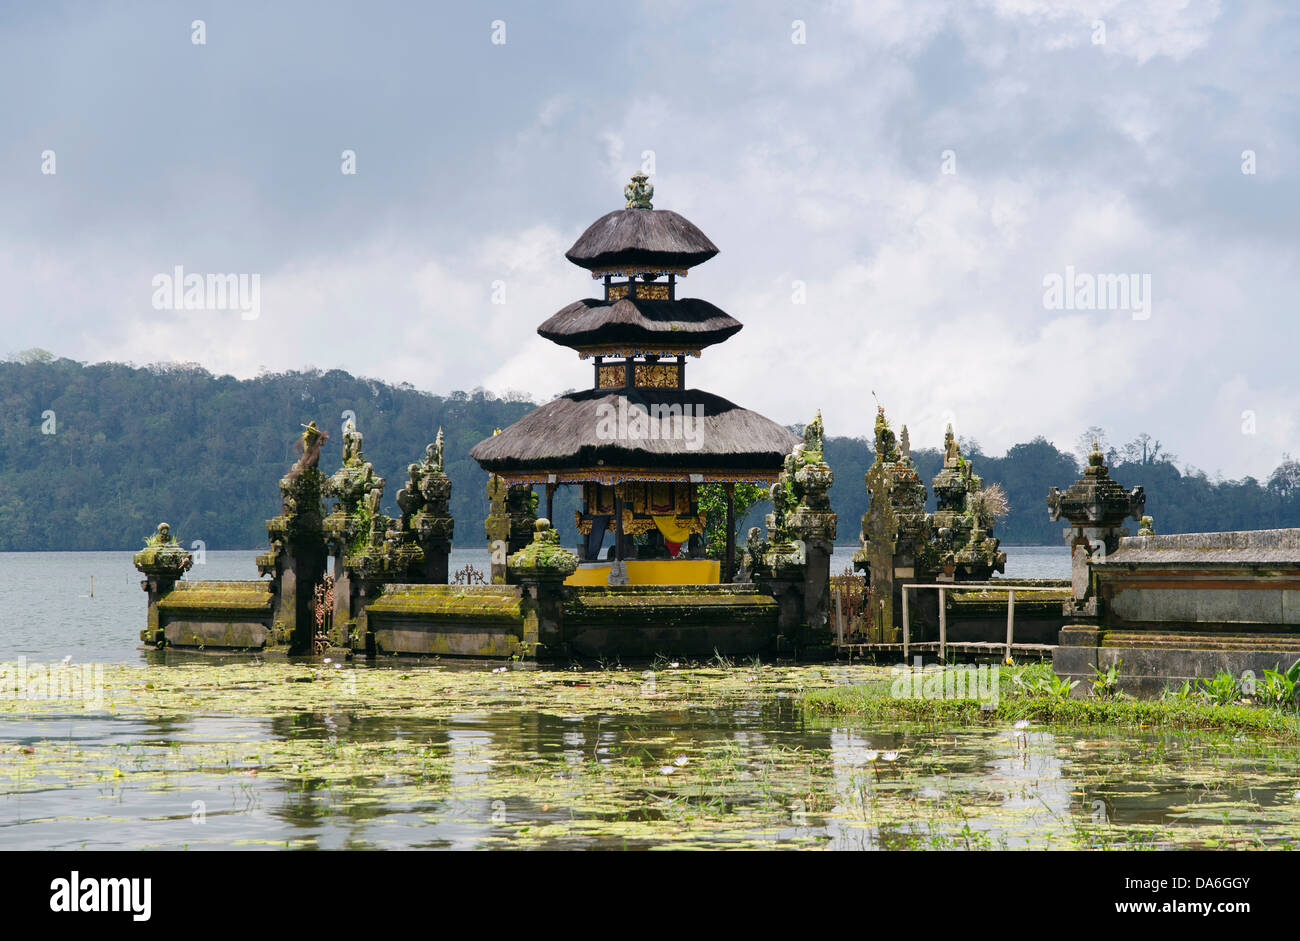 Pura Ulun Danu temple on Lake Bratan Stock Photo